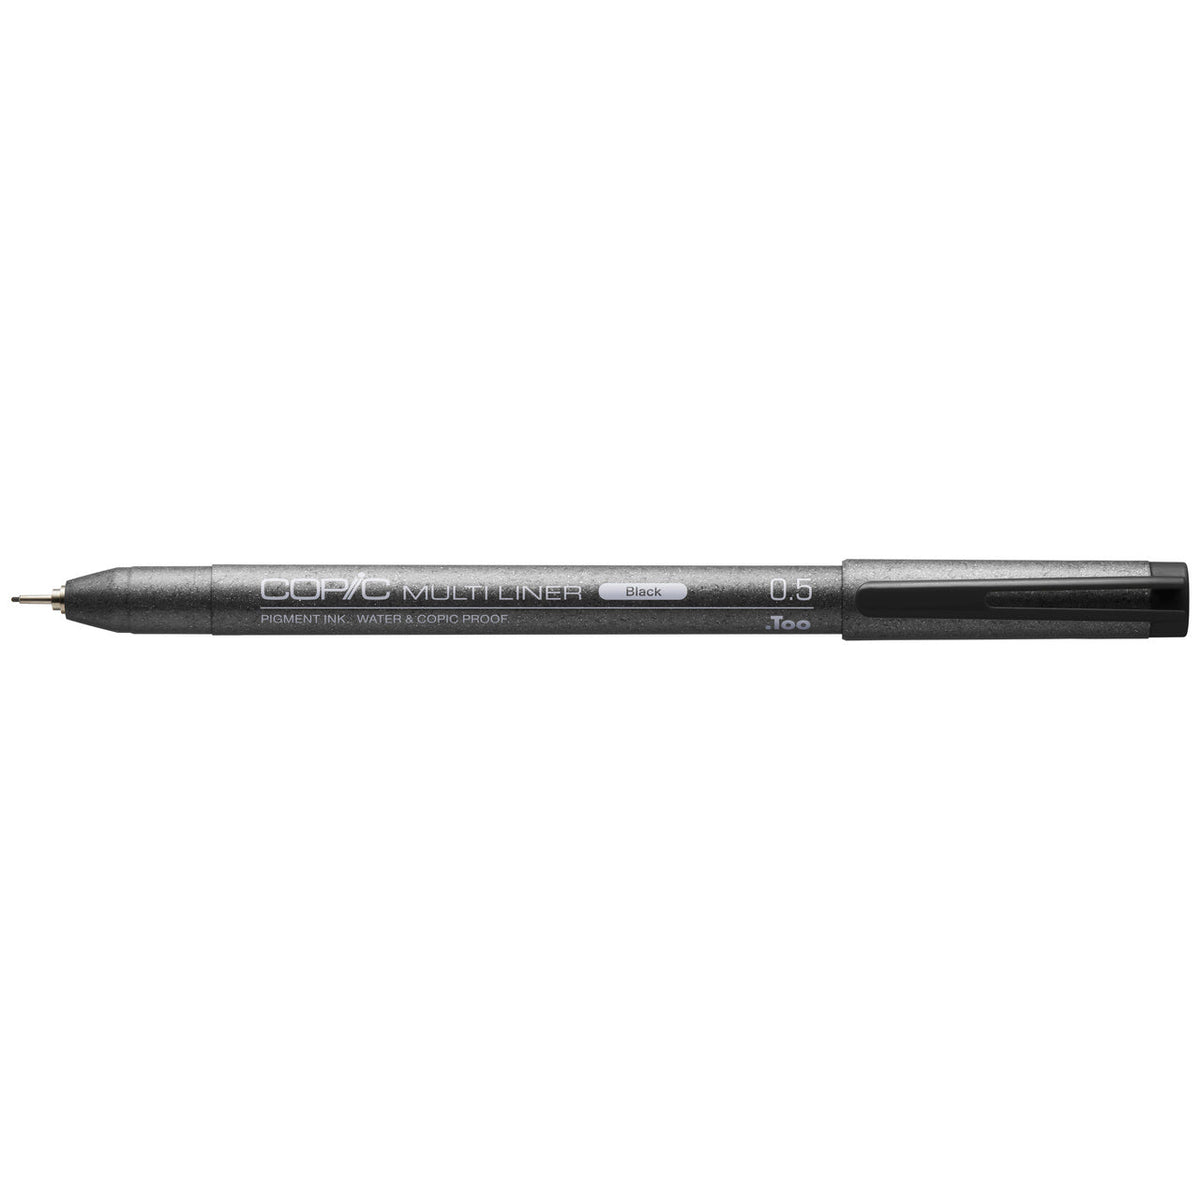 Marvy Drawing Pen - Black - 0.03 mm